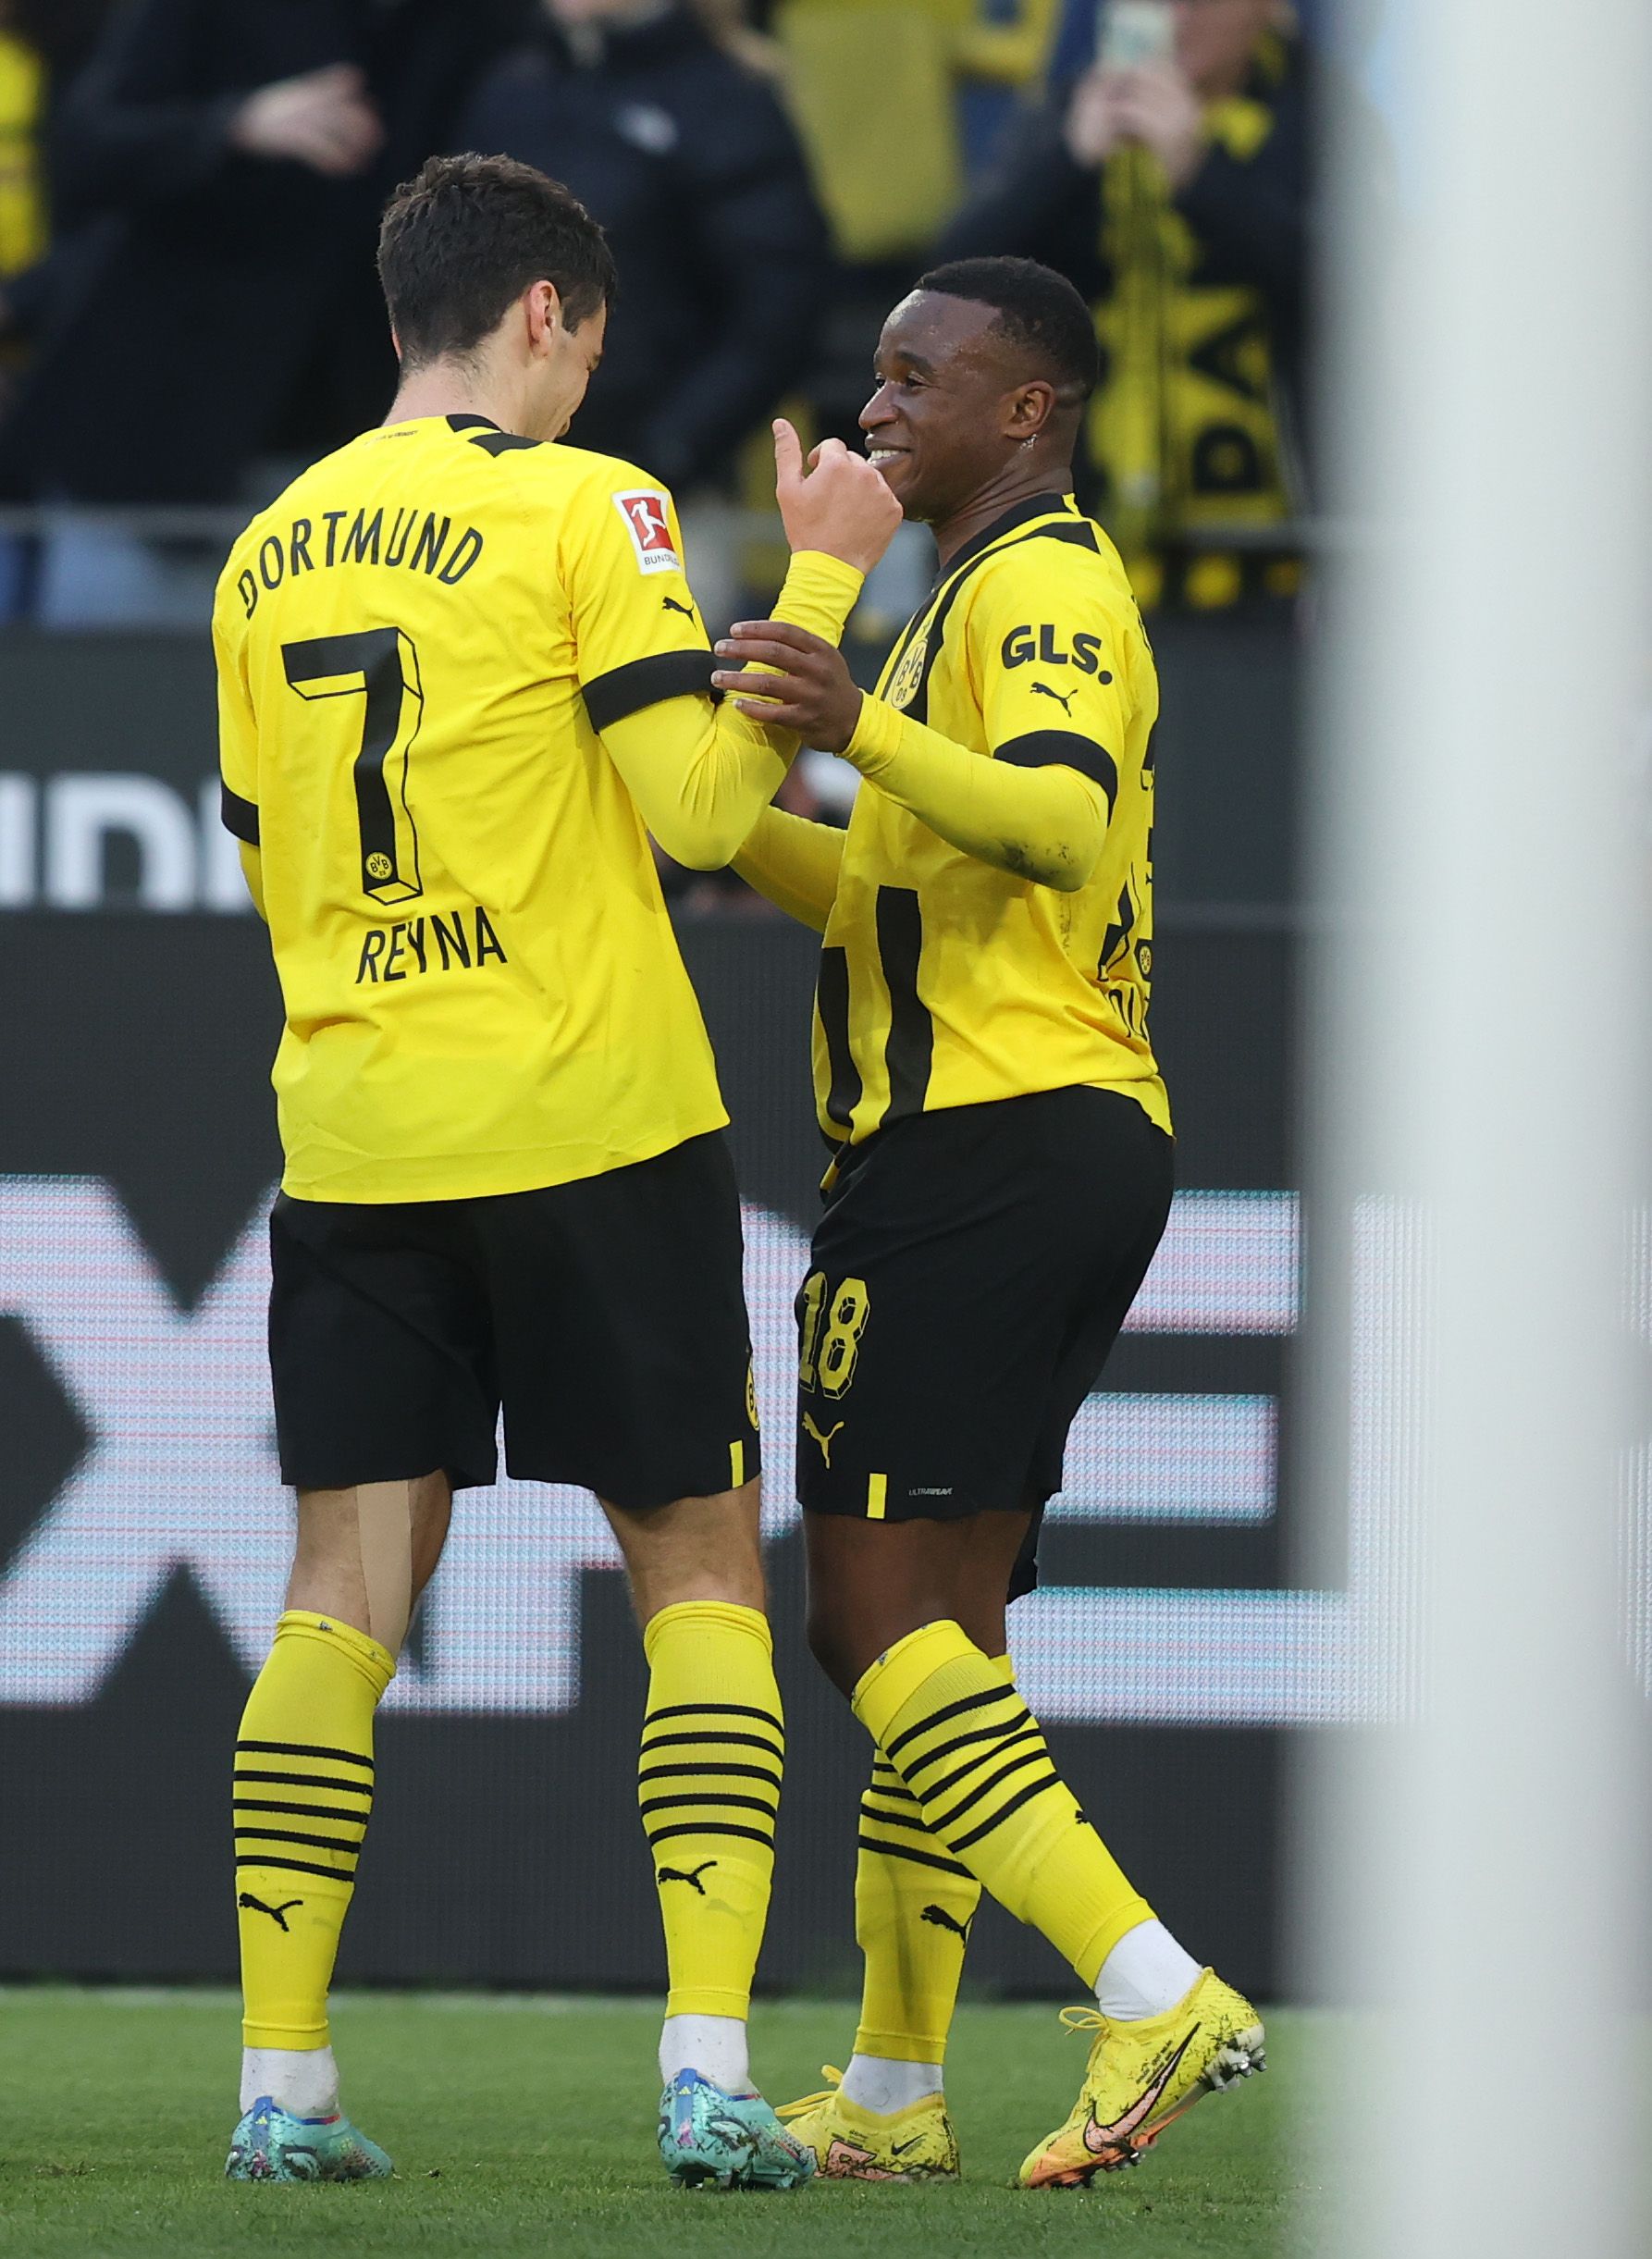 Dortmund celebrate scoring in the Bundesliga.